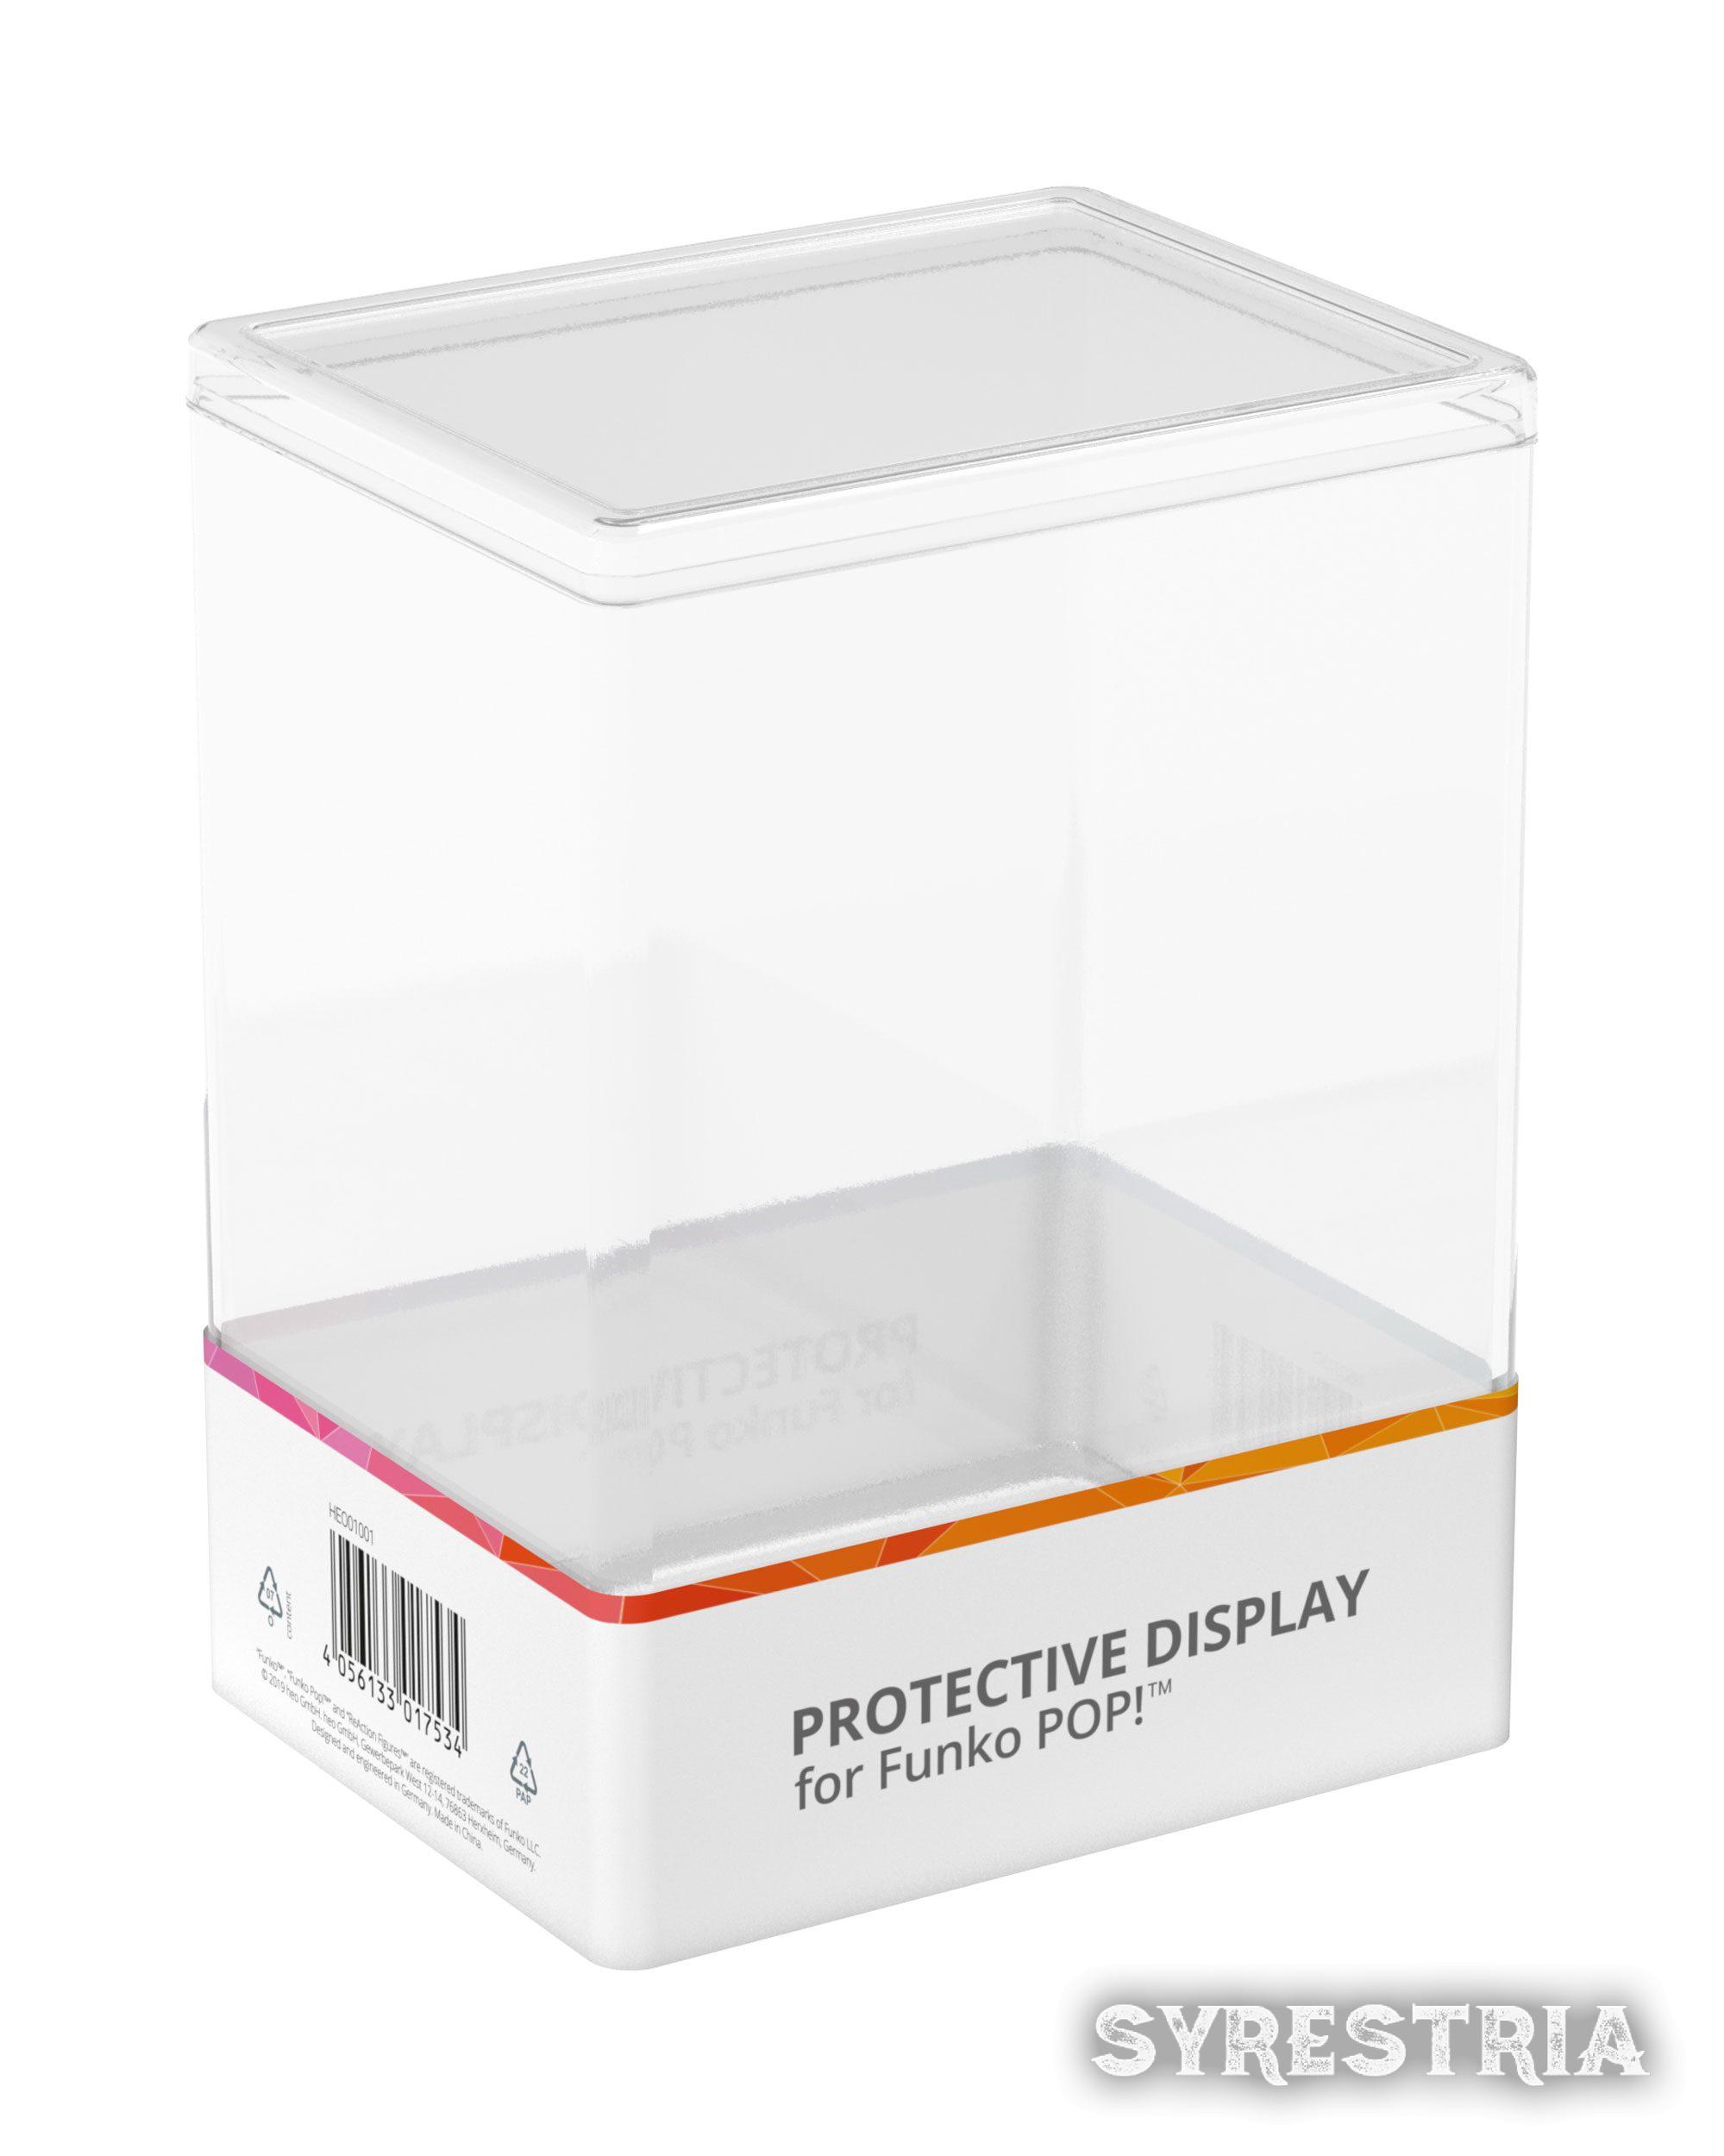 heo Schutzhüllen Hardbox Protective Display Case für Funko POP!™ Figuren 6er Packung